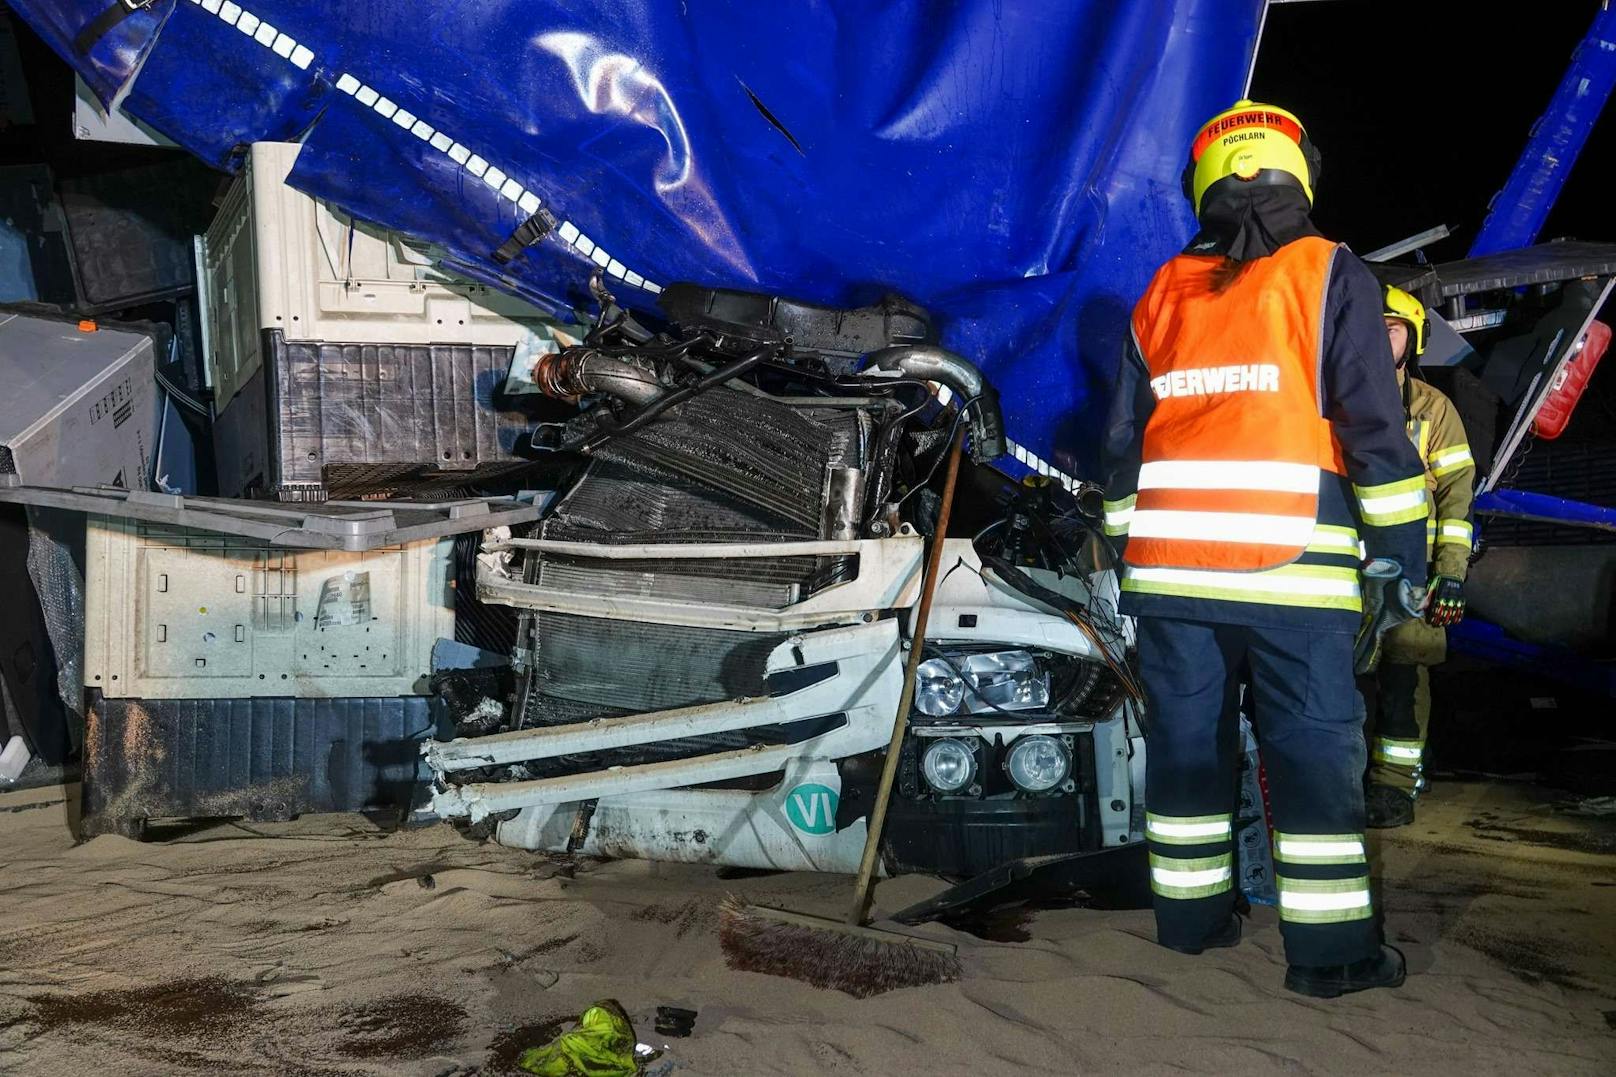 Ein tragischer Verkehrsunfall ereignete sich am Freitag gegen 01:00 Uhr auf der Westautobahn in Fahrtrichtung Salzburg zwischen Melk und Pöchlarn. Ein Sattelzug kollidierte mit zwei am Pannenstreifen abgestellten Sondertransportern, bevor er gegen die Mittelbetonleitschiene prallte. Ein Mann kam dabei ums Leben.